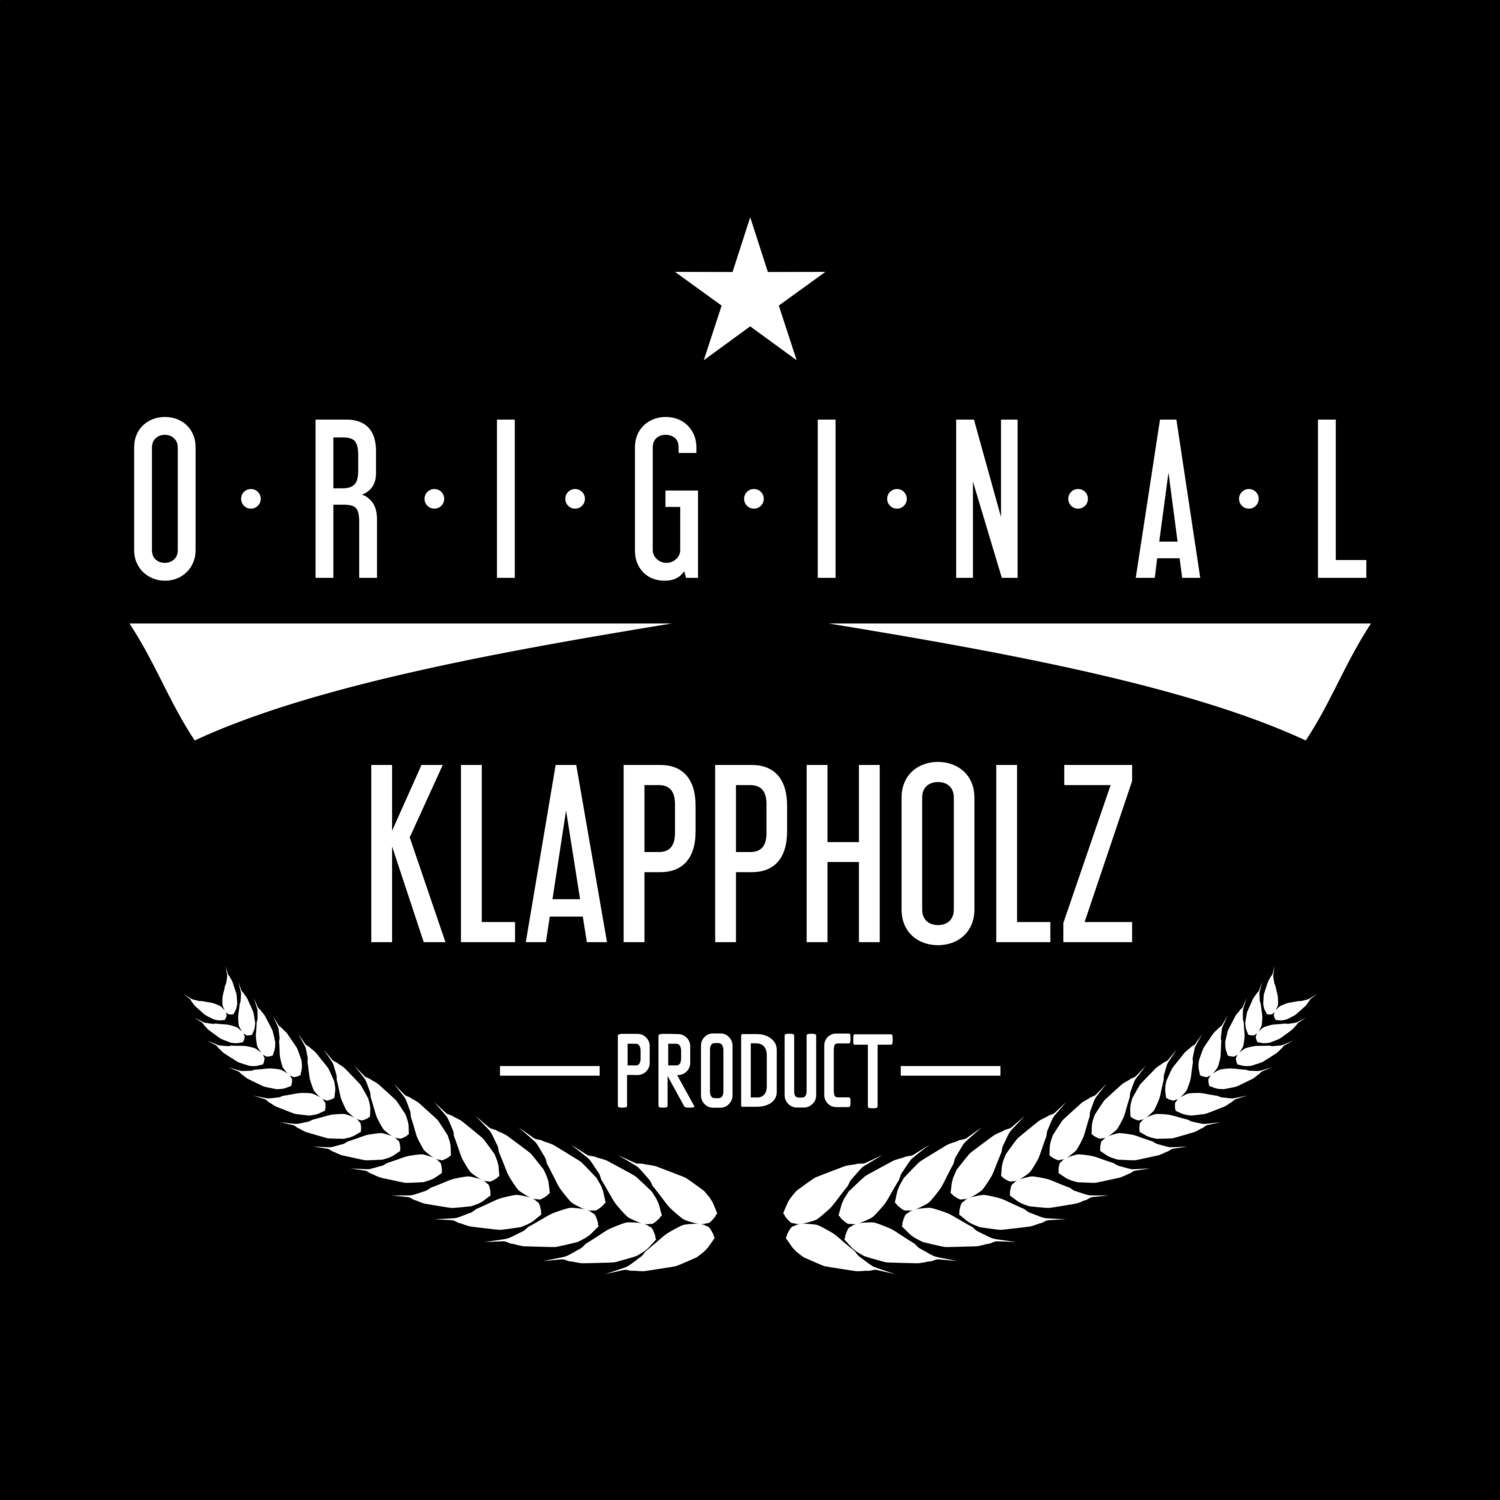 Klappholz T-Shirt »Original Product«